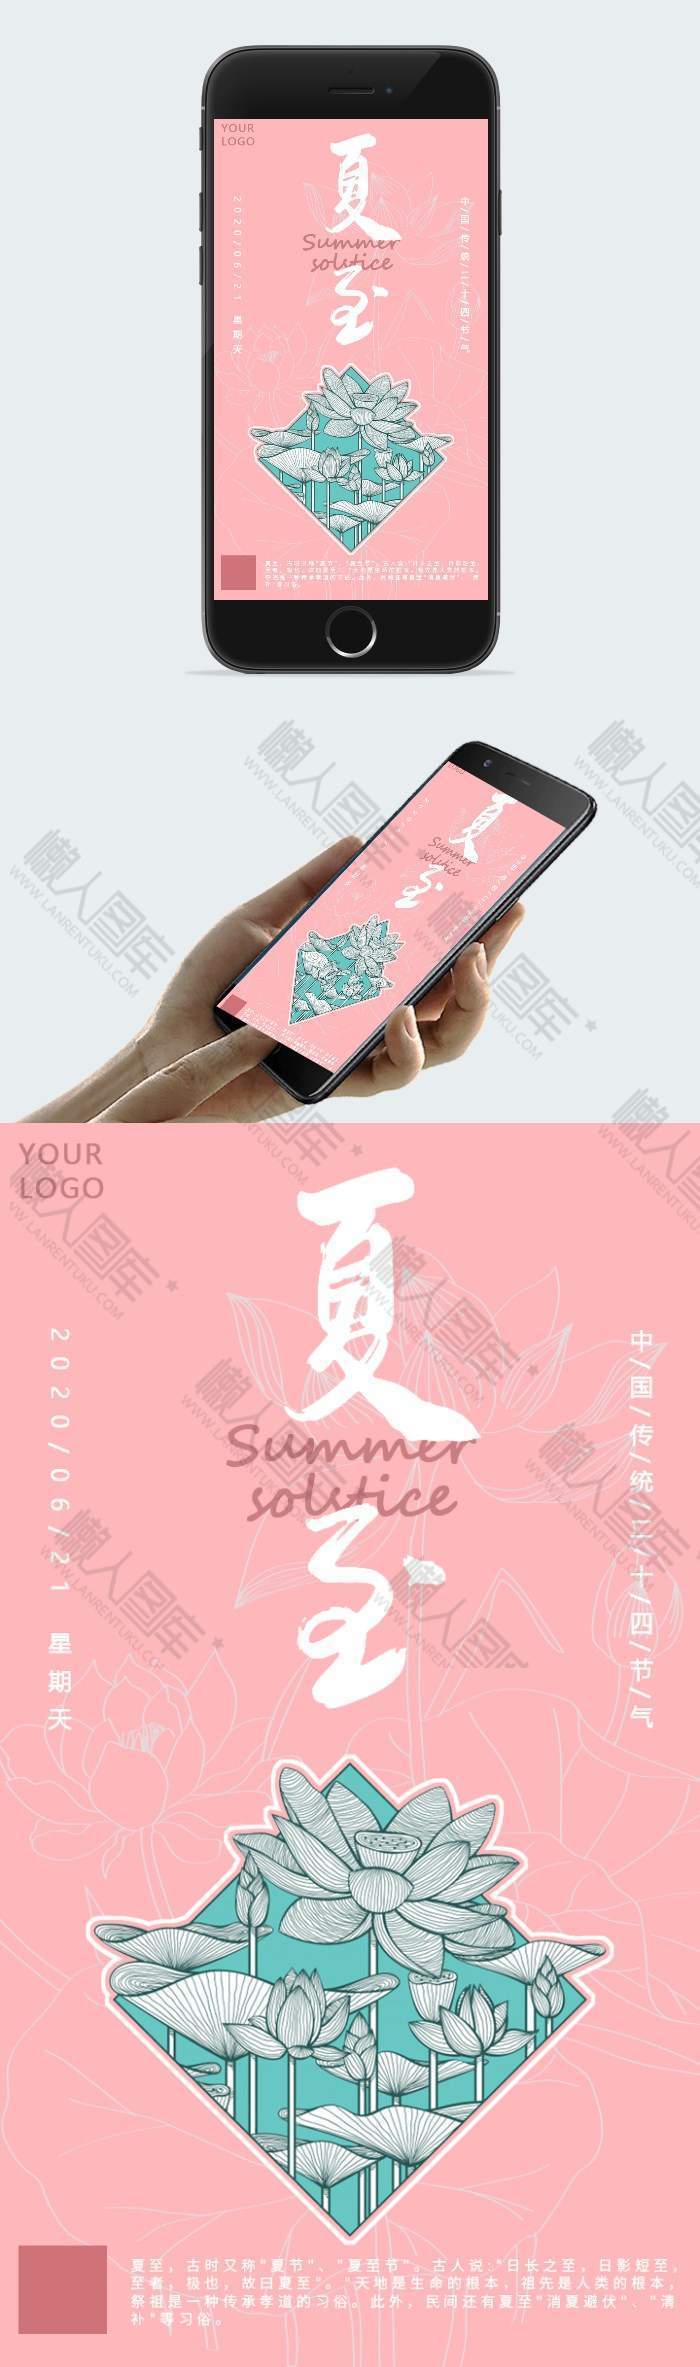 清新粉红色夏至荷花元素手机海报